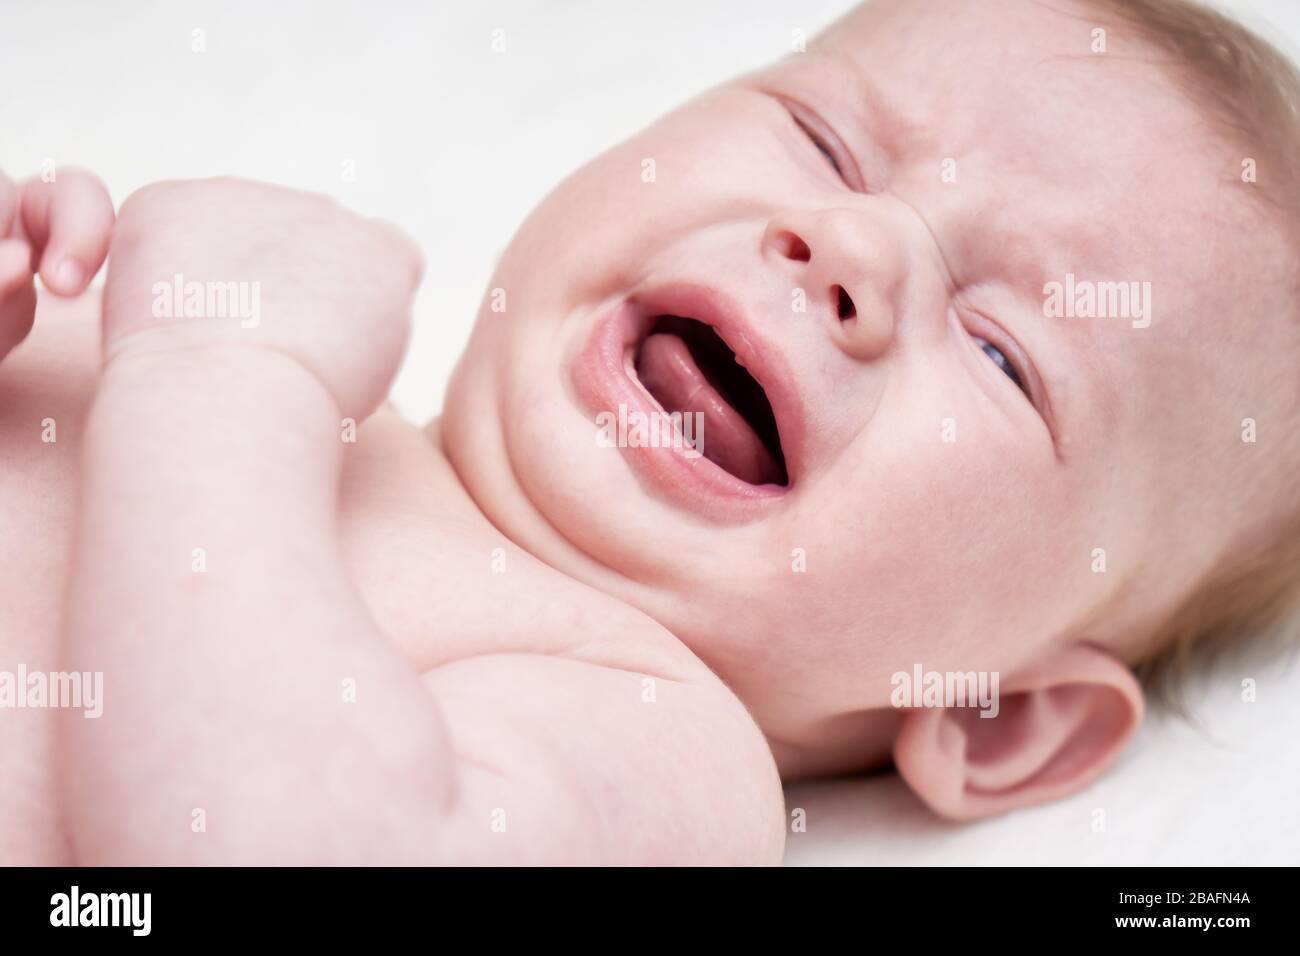 Joli bébé pleurant sur un fond clair gros plan Banque D'Images